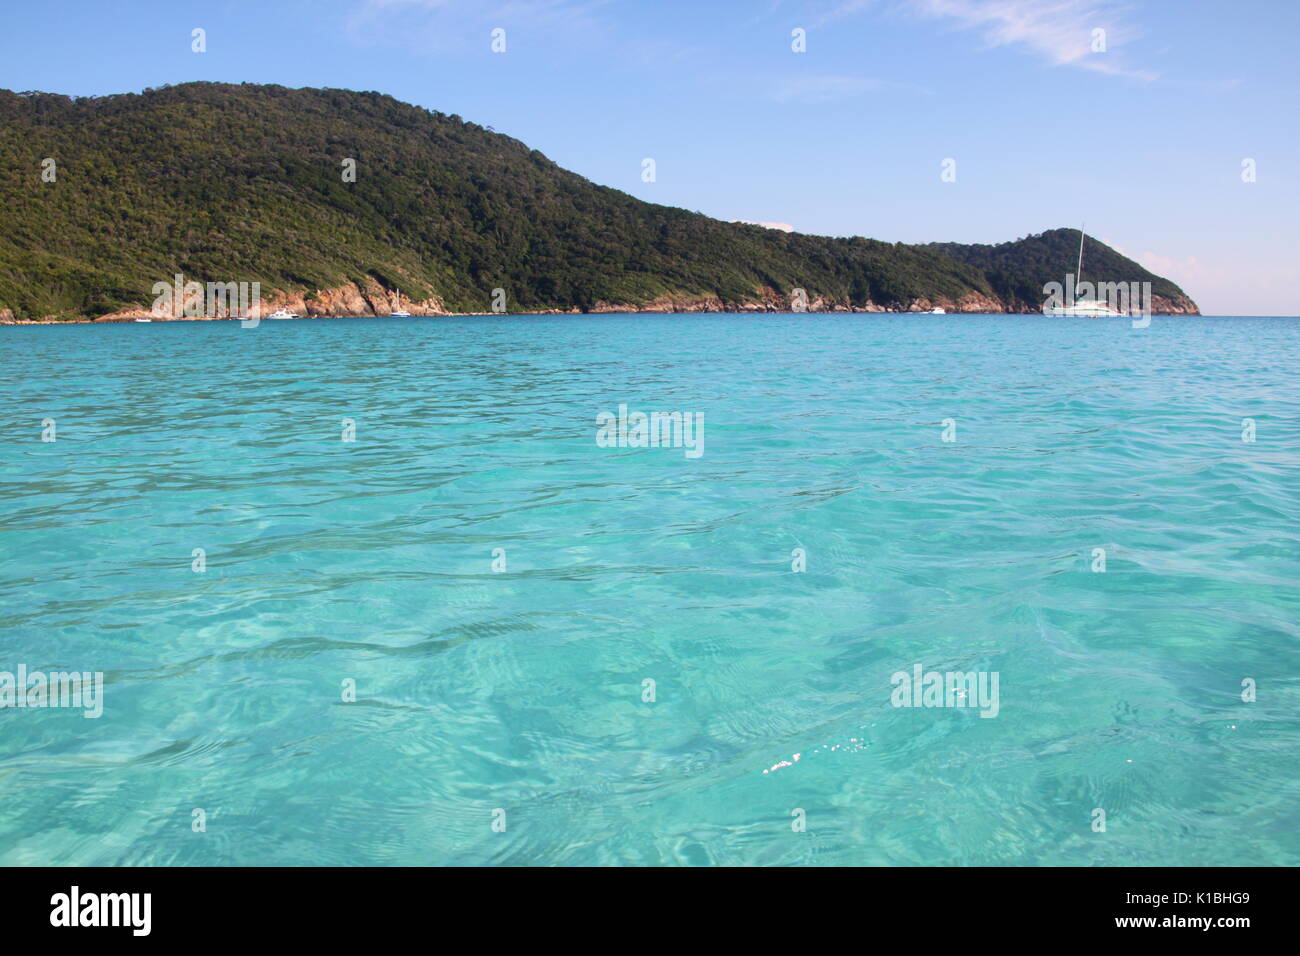 Teluk Dalam, beautiful island of Pulau Redang, Malaysia Stock Photo